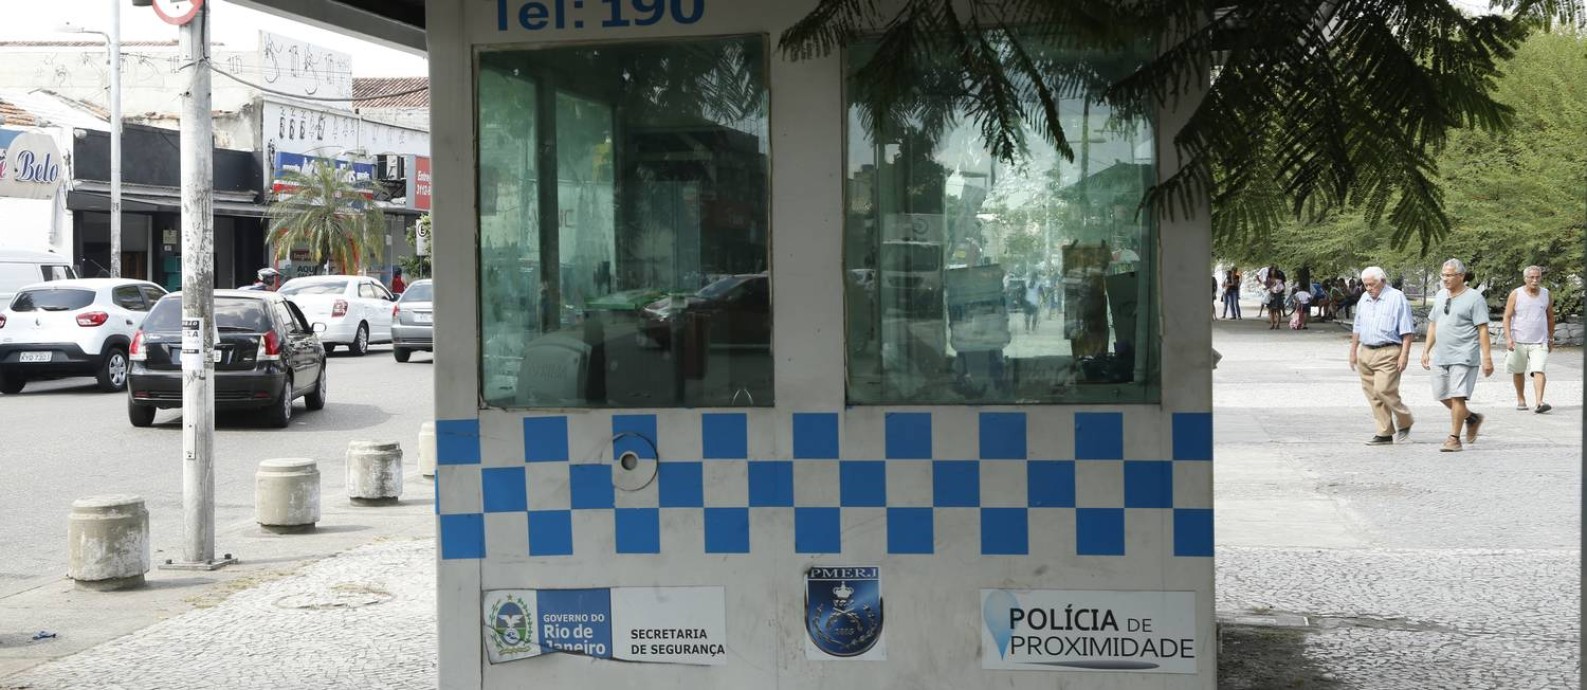 Cabine da PM abandonada em praça de Realengo Foto: Antonio Scorza / Agência O Globo